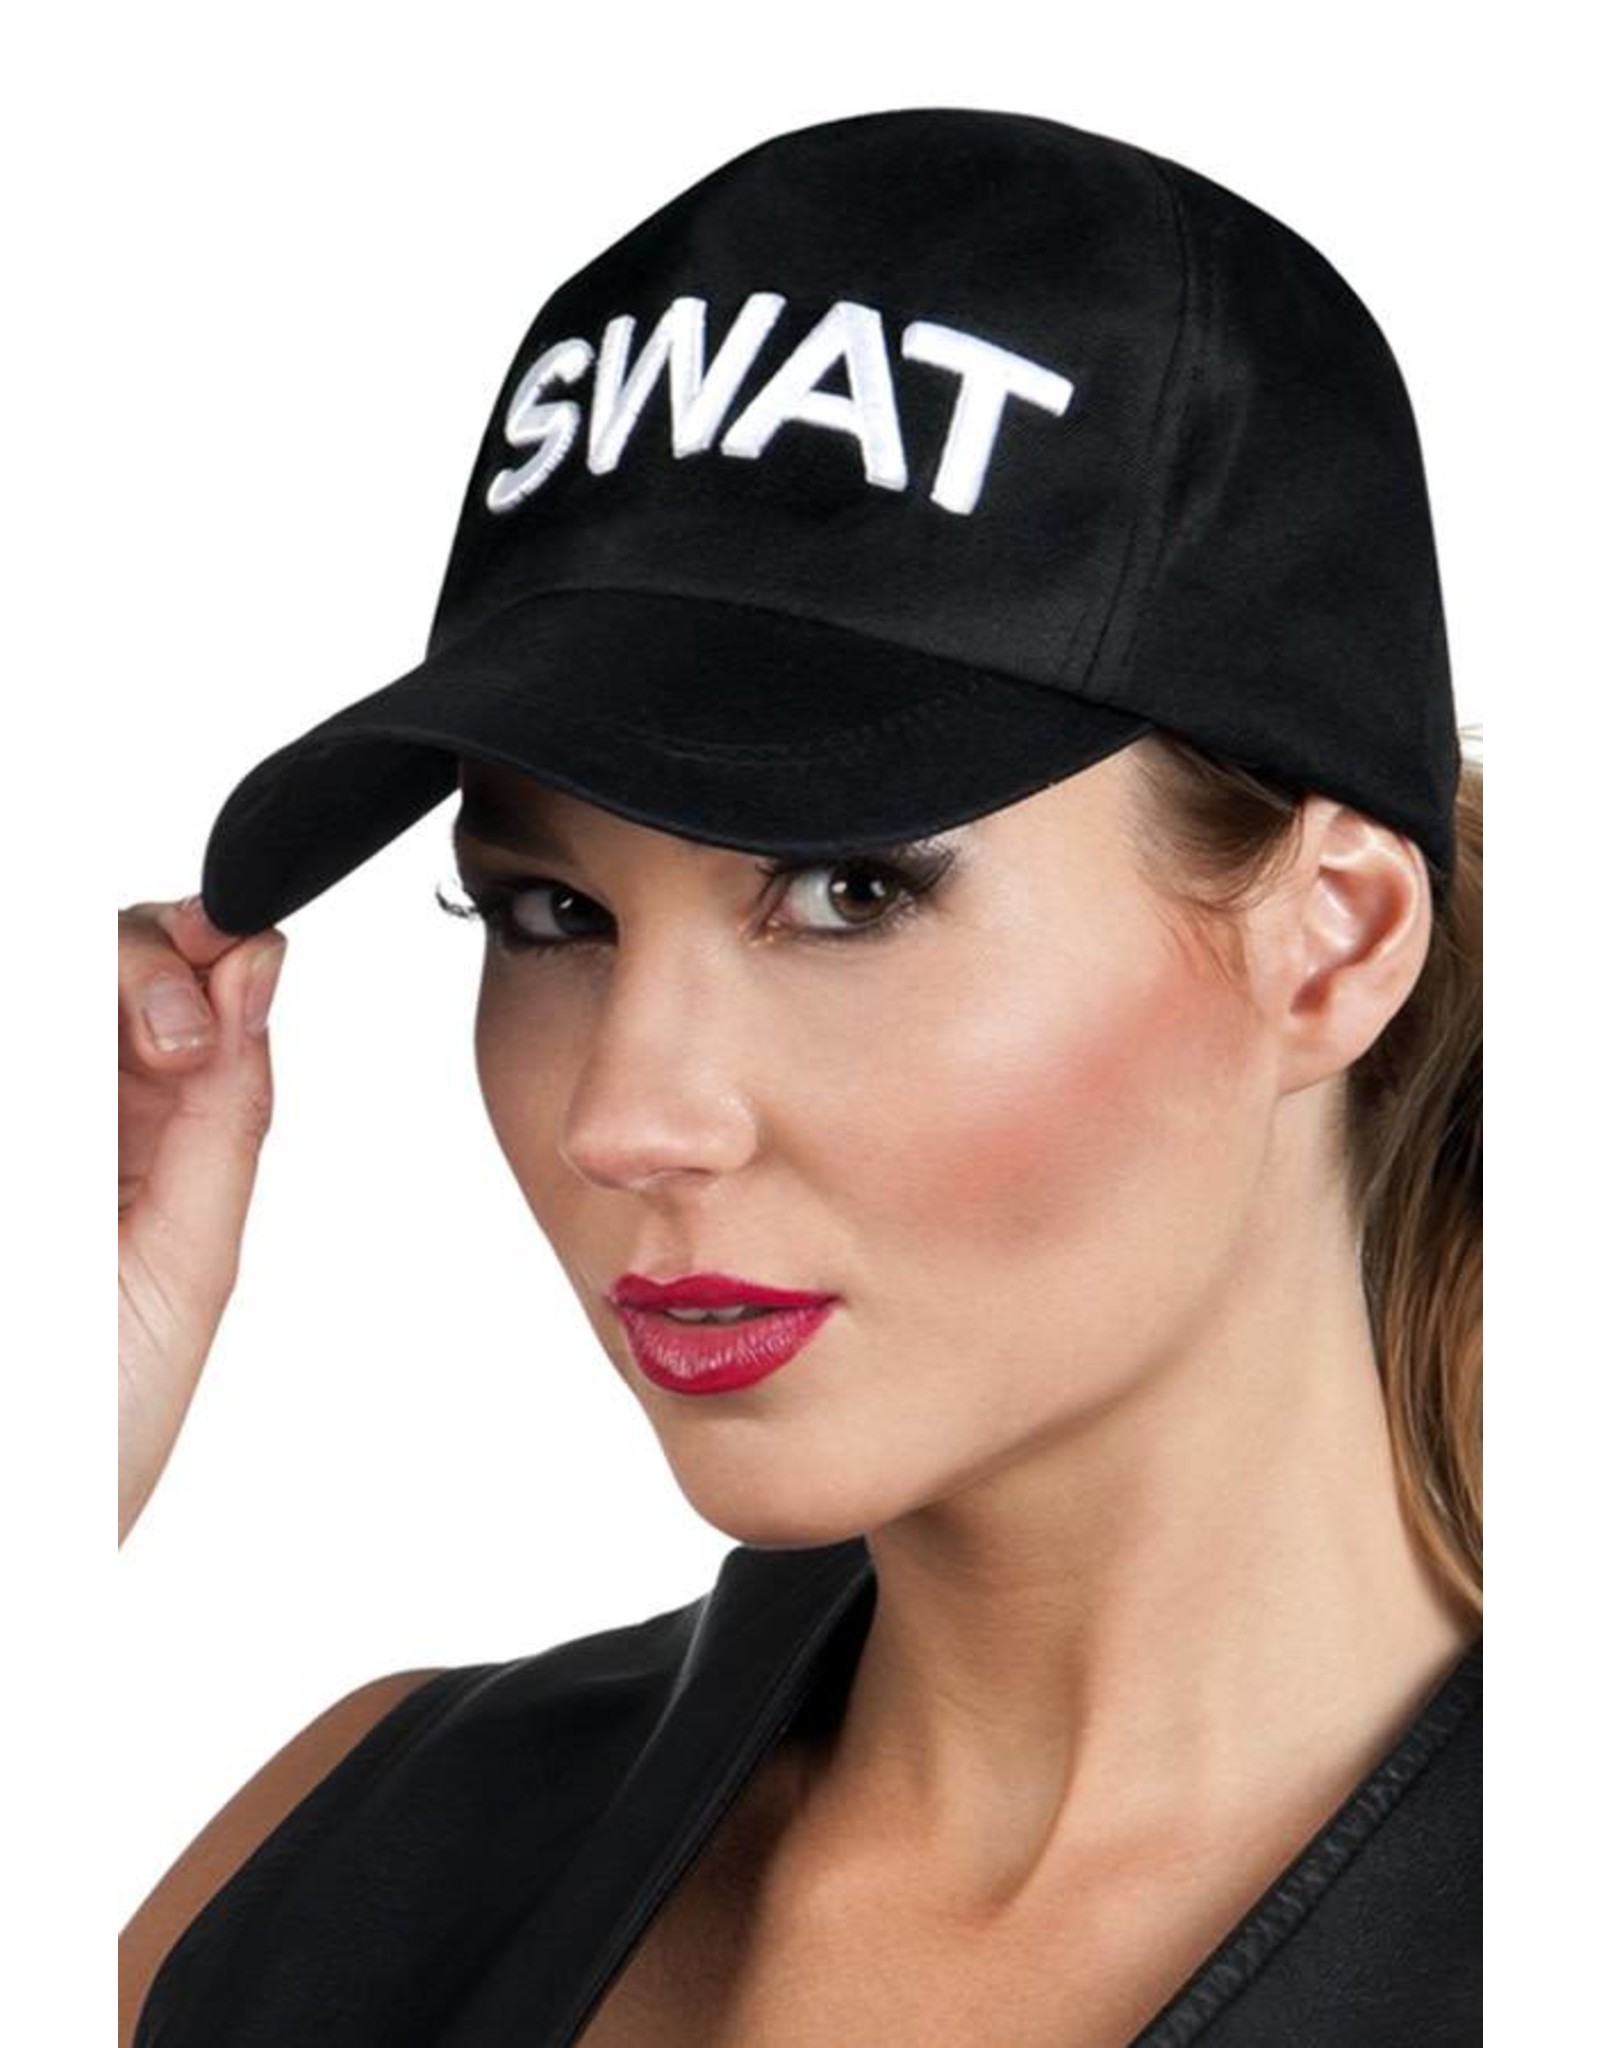 Baseball cap SWAT